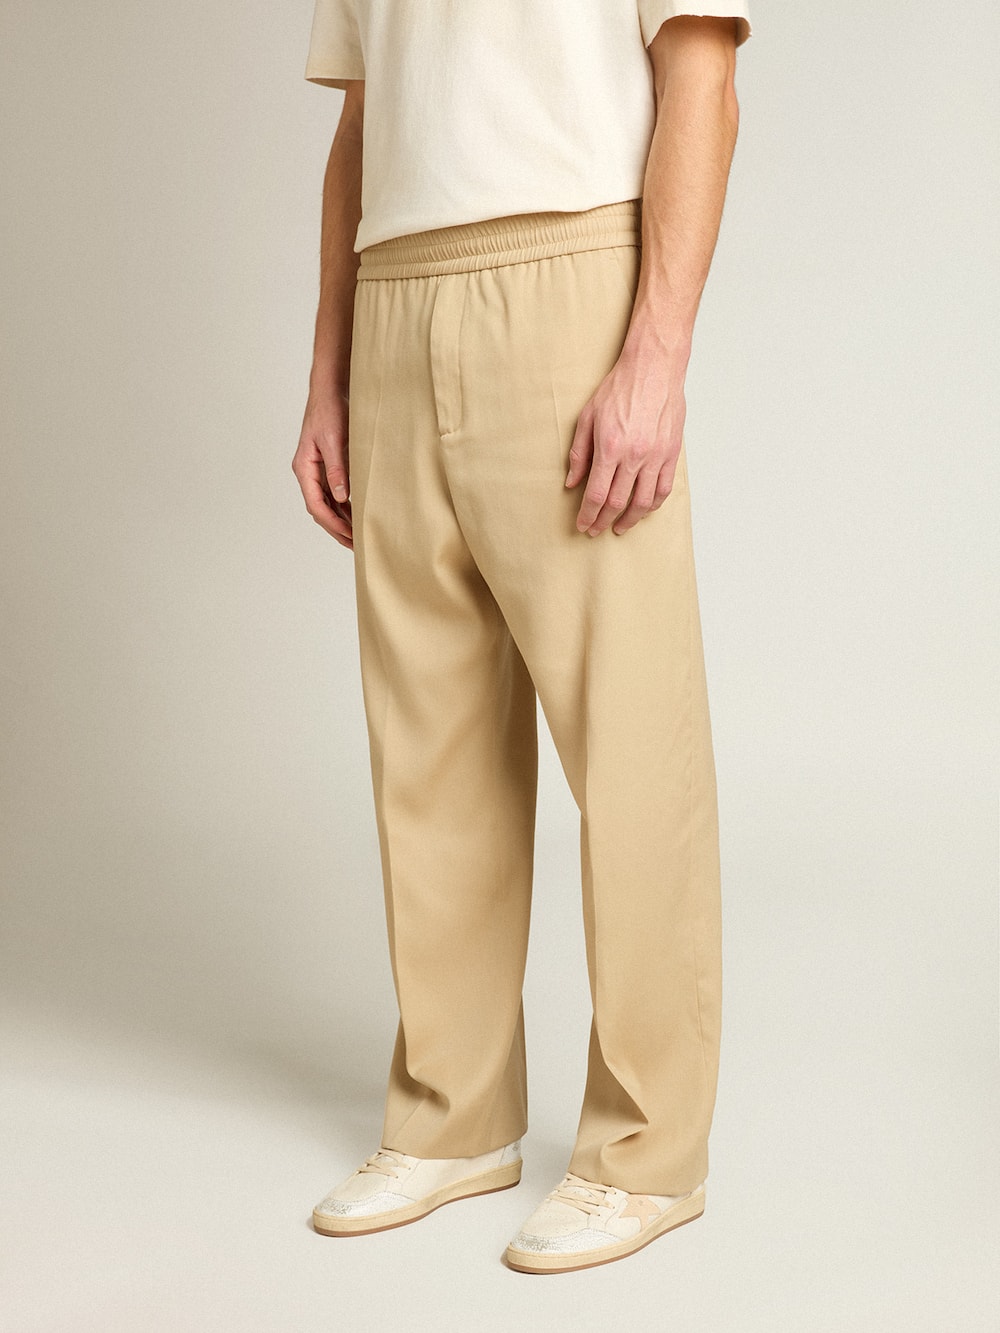 Golden Goose - Pantalón jogger de hombre color arena con bolsillo en la espalda in 